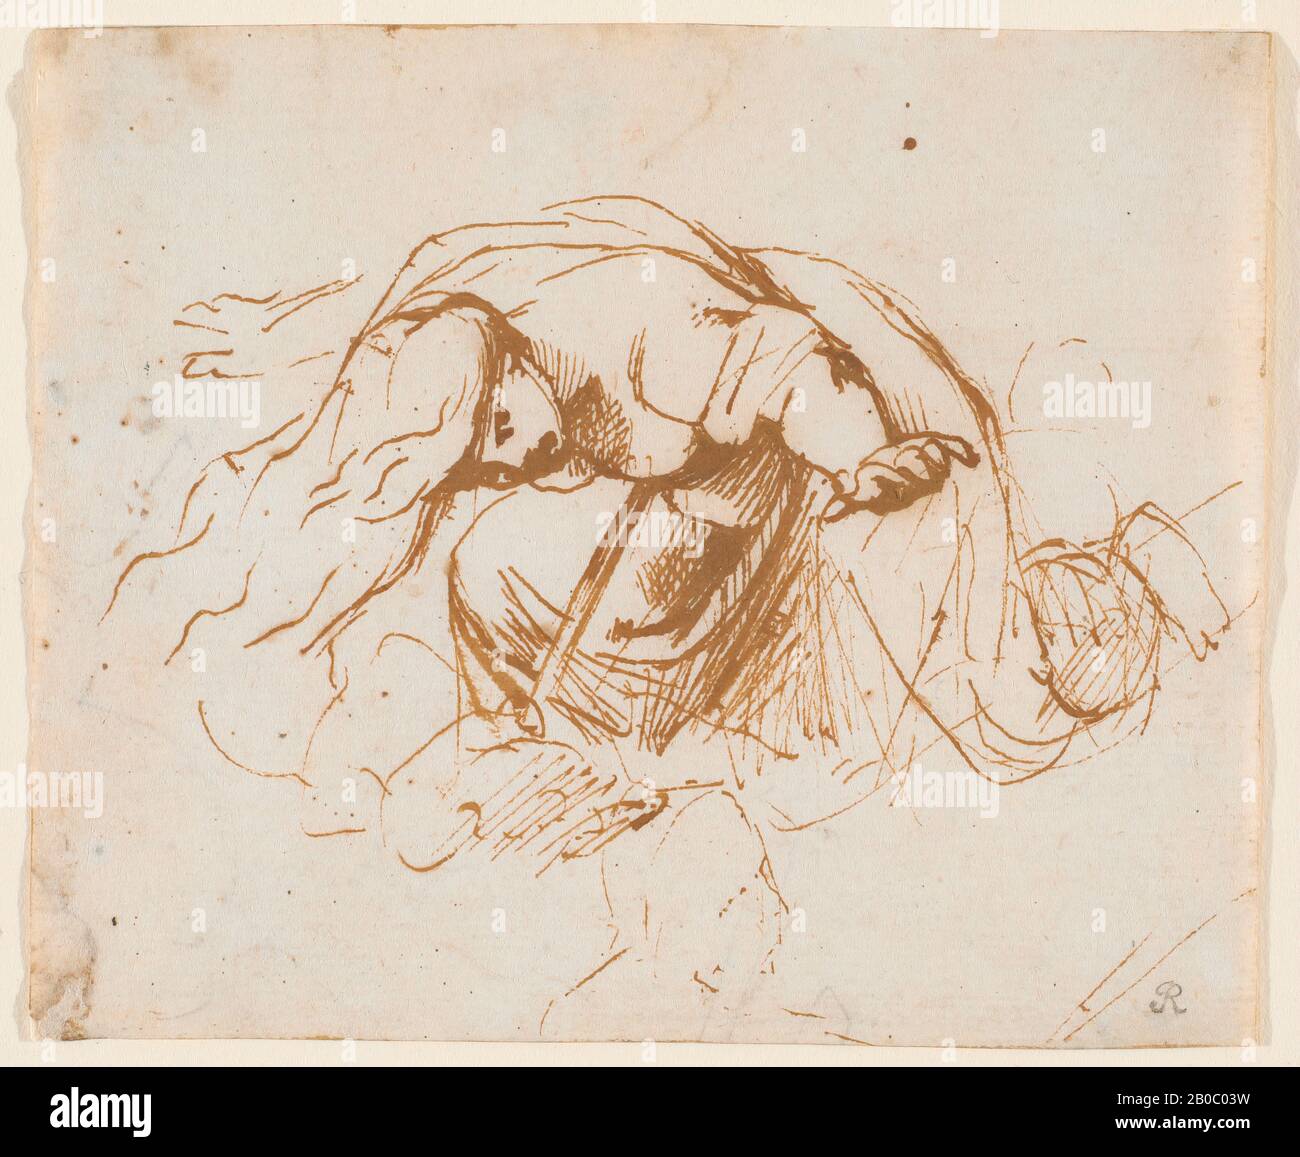 Peter Paul Rubens, la mort de Dido, 1600-1603, encre plume et marron sur papier, 3 3/4 po. X 4 1/2 po. (9,53 cm. X 11,5 cm.), Selon 'Aeneid' de Virgile,' Dido, Reine de Carthage, est assauts quand son amant Aeneas part. Au choc de tous, elle monte un pyre assemblé des biens d'Aeneas et tombe sur une épée. Dans ce croquis et dans une feuille connexe au Louvre, Rubens développe des poses variables de la figure avec des bras étirés, une draperie fluide et une expression de la patte. Cette fiche est une rare esquisse de "première idée" que Rubens a tracée au début de ses années italiennes, lorsqu'il était au service du duc Vi Banque D'Images